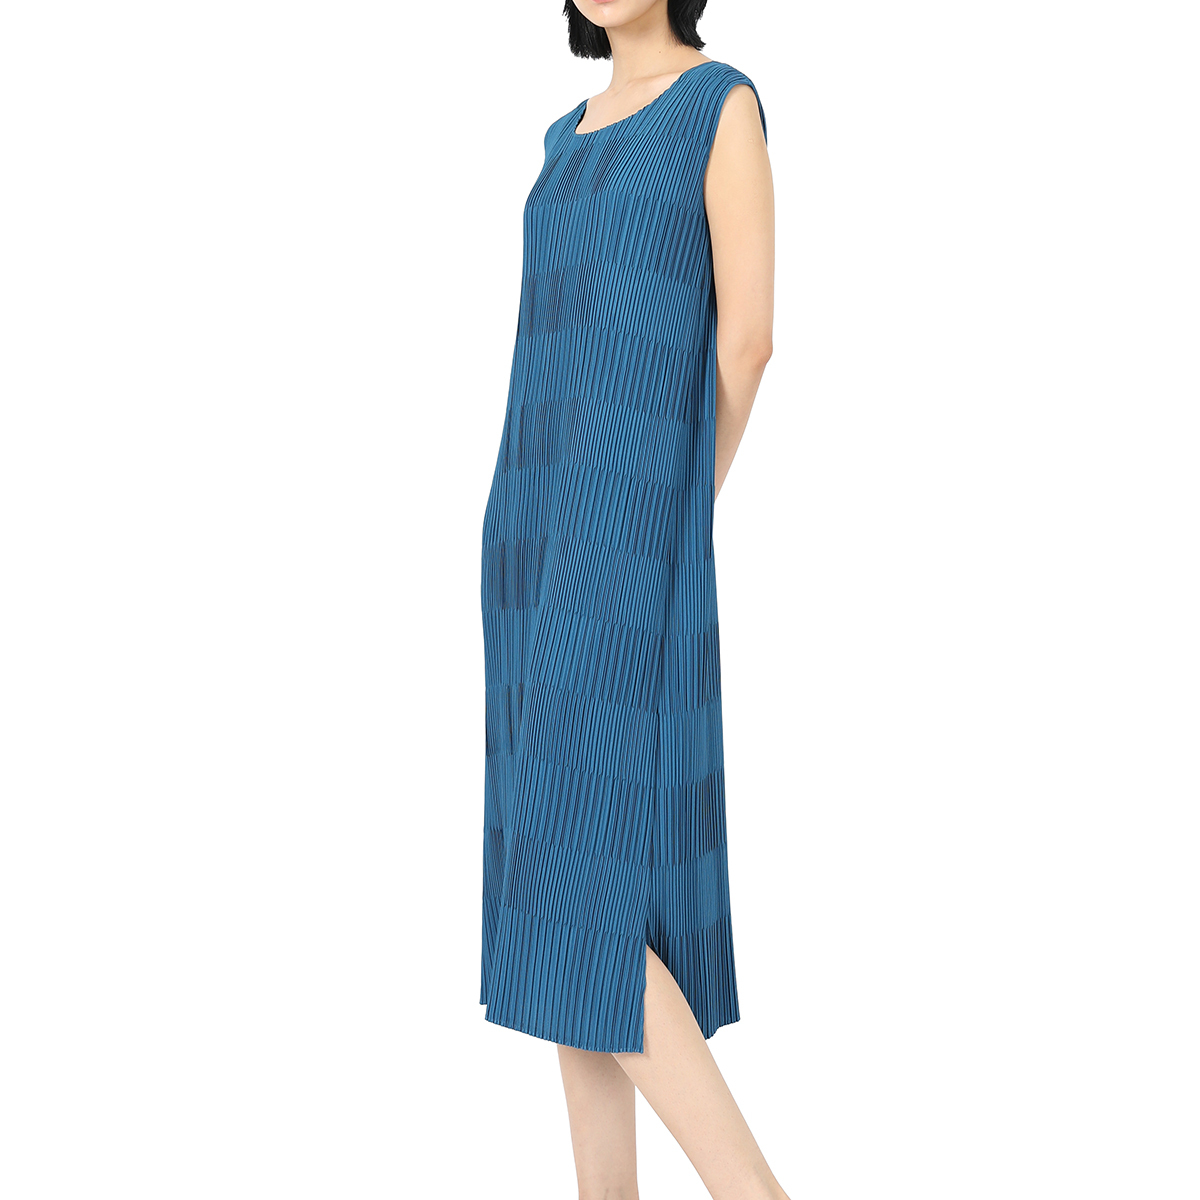 요이츠 여성 민소매 드레스 - 블루 솔리드